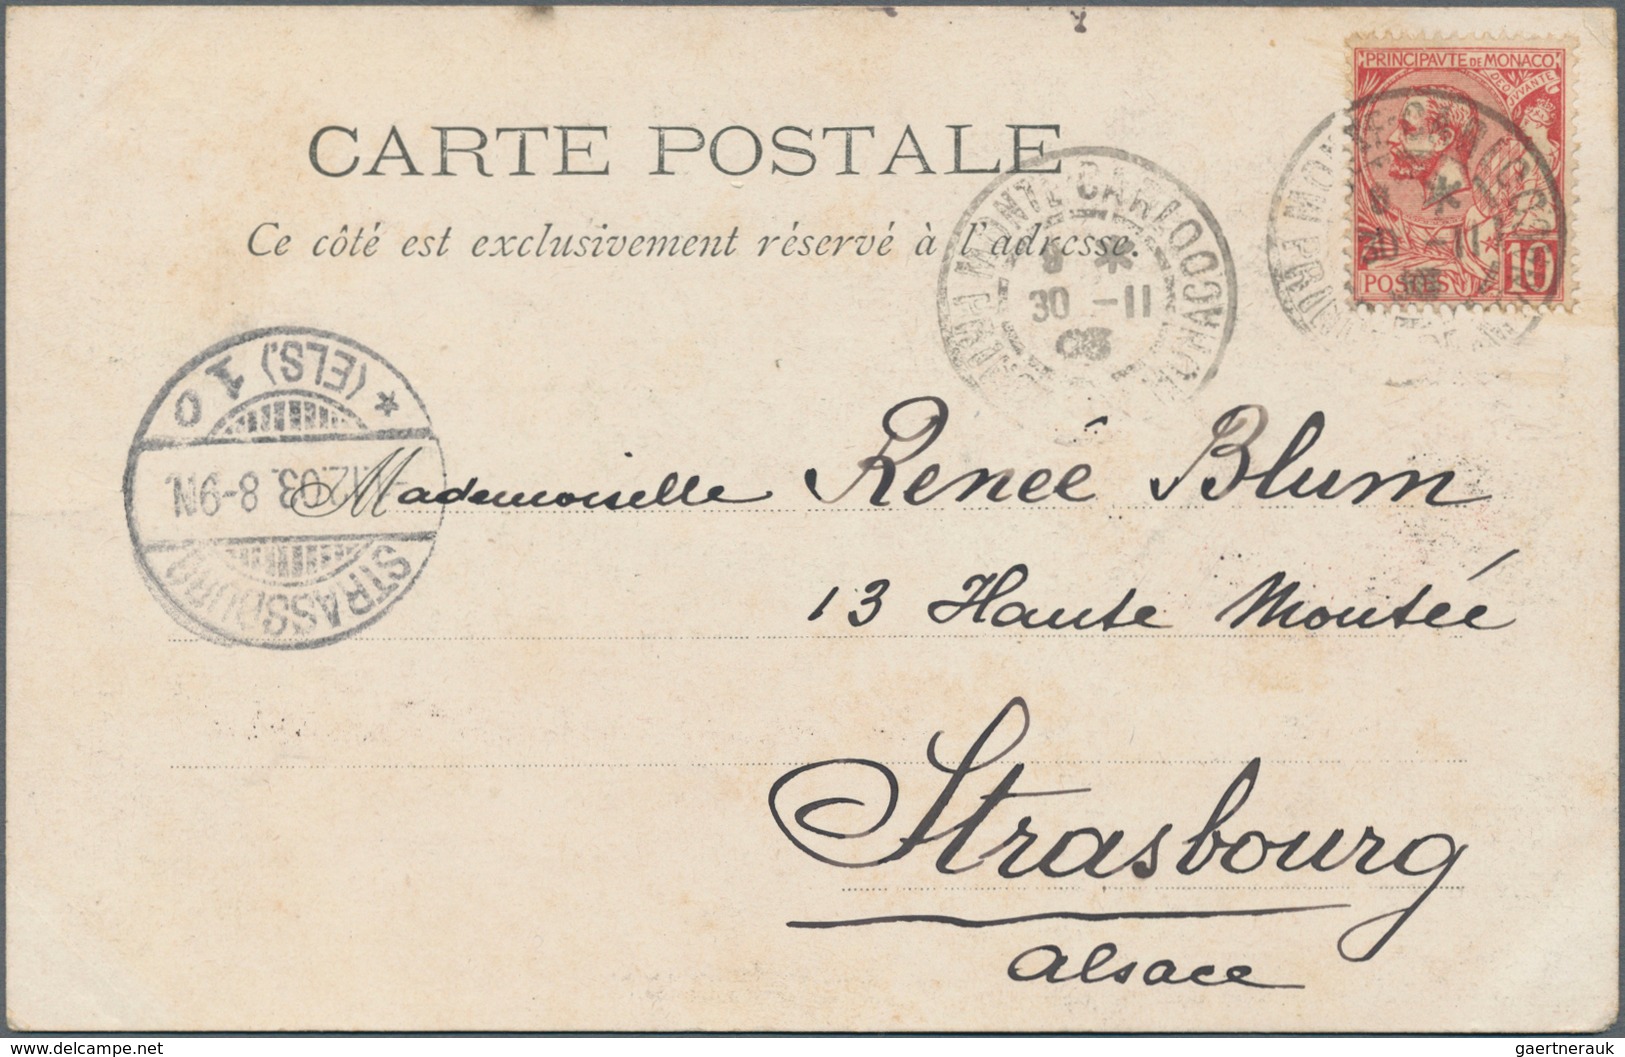 Frankreich: 1898/1900 (ca.), über 100 gelaufene Frankreich Postkarten mit einigen "Souvenir de...",